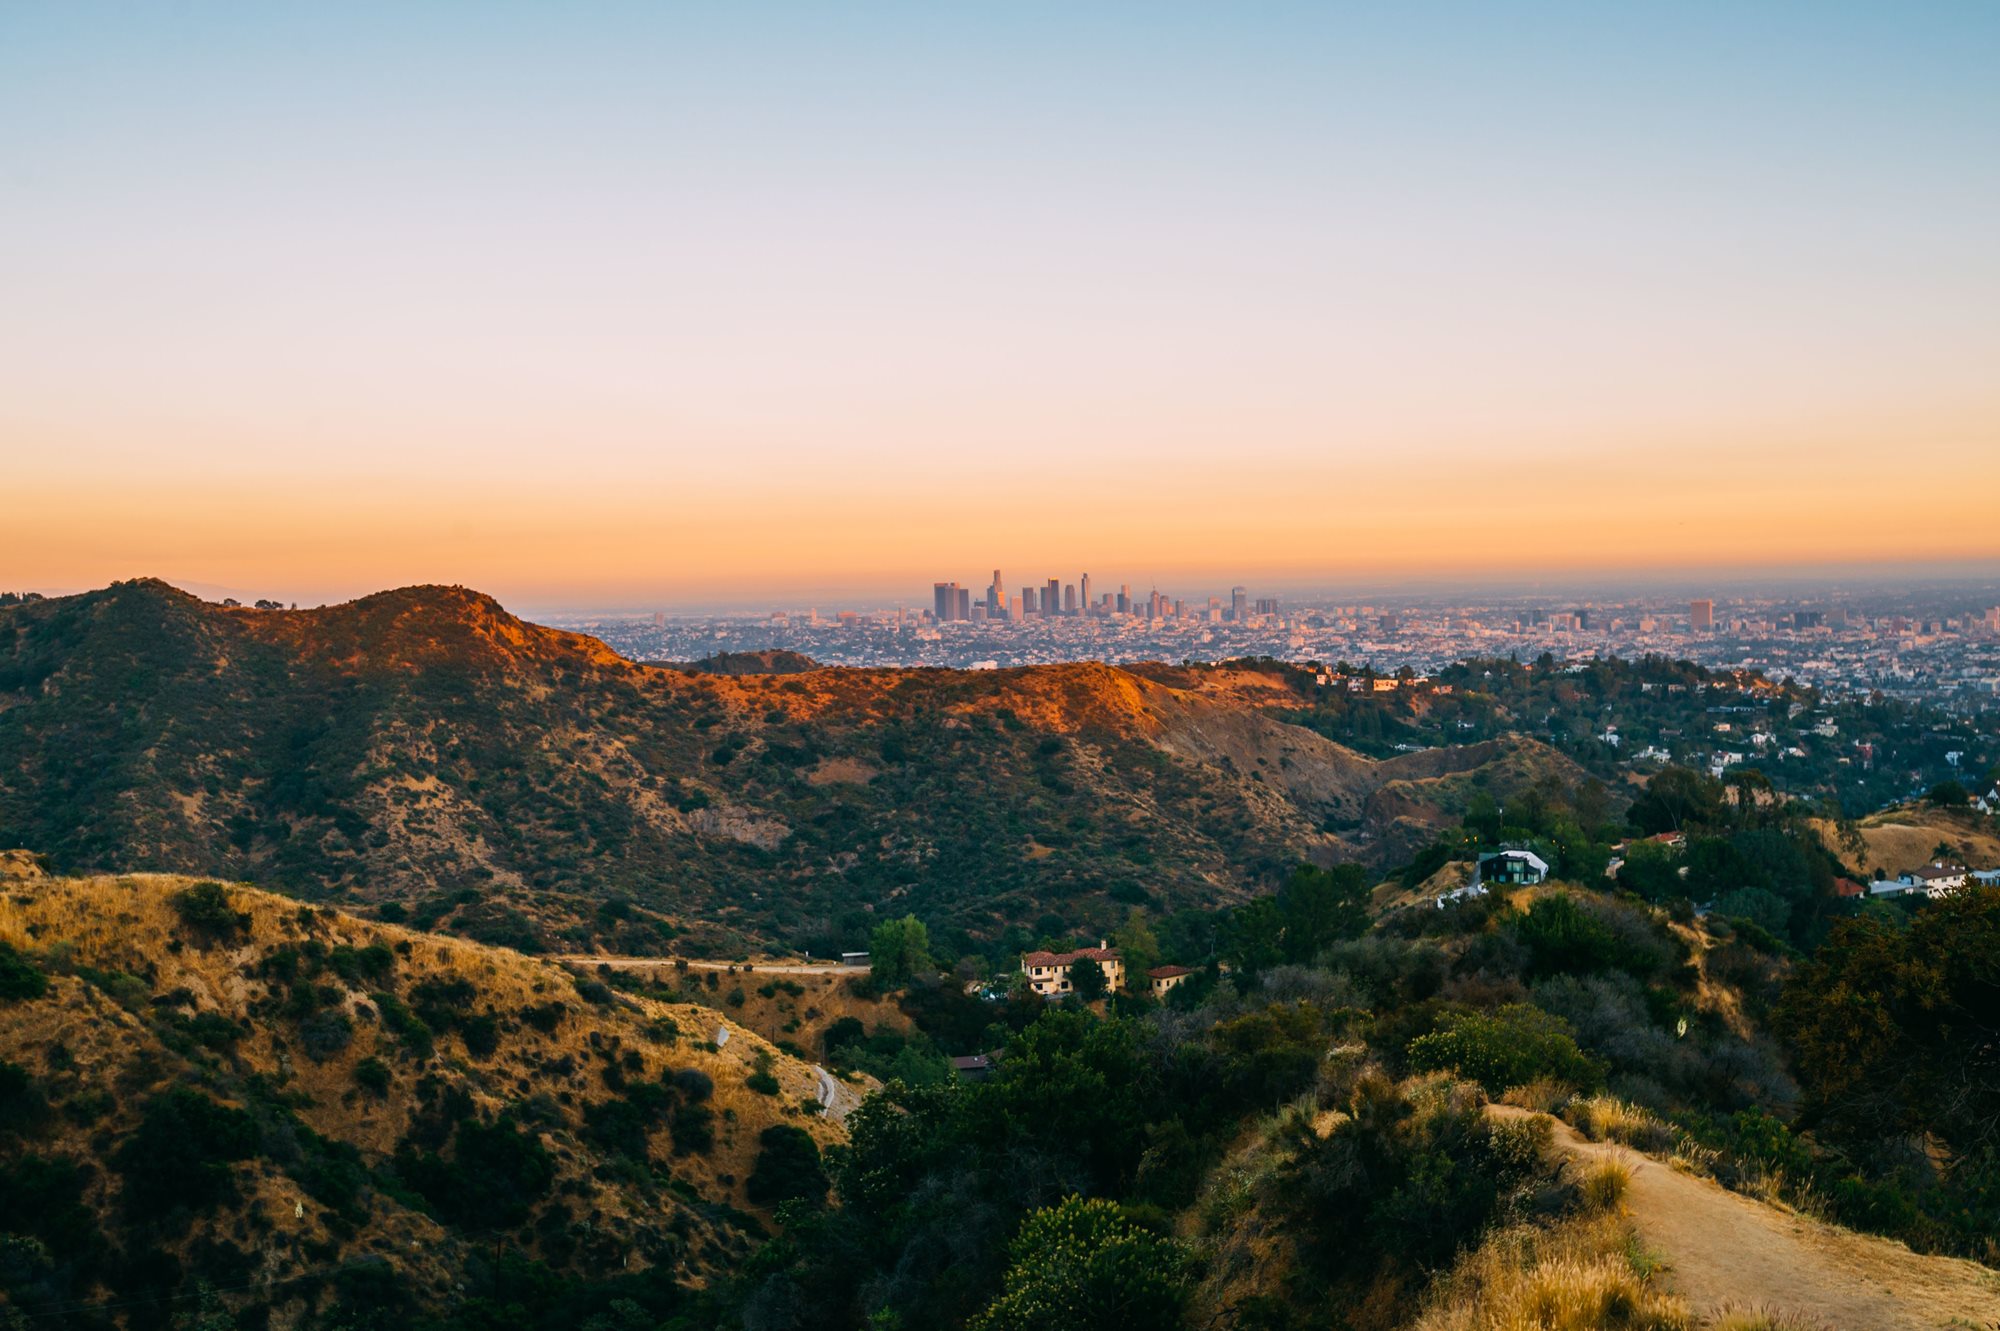 Los Angeles skyline behind hills